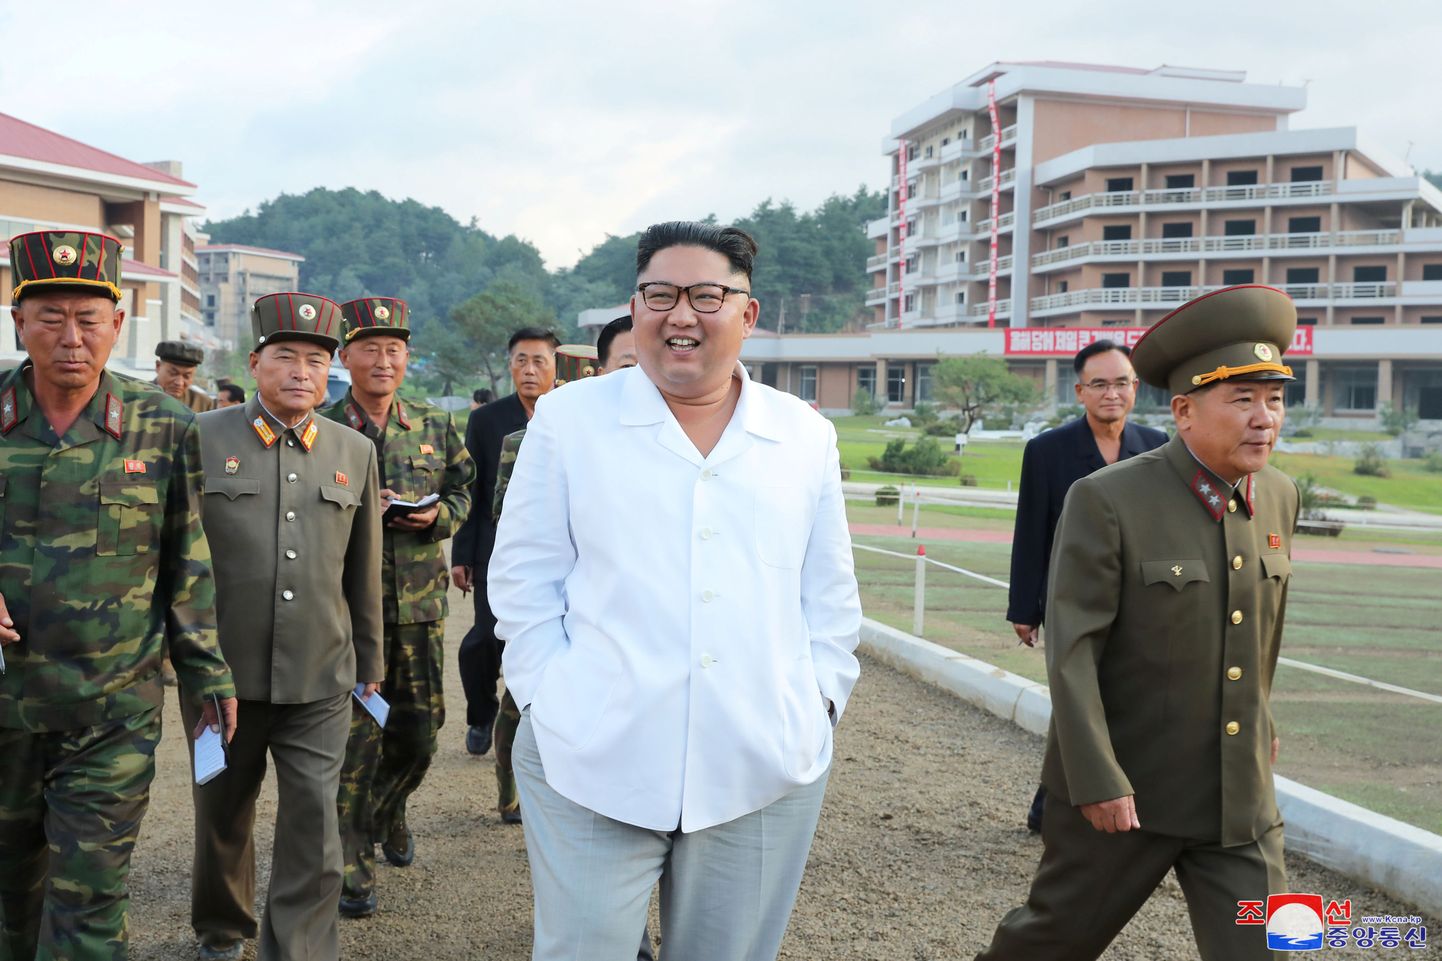 Põhja-Korea liider Kim Jong-un külastas 30. augustil 2019 Yangdoki kuumaveeallikate kuurorti, mis oli ehitamisel